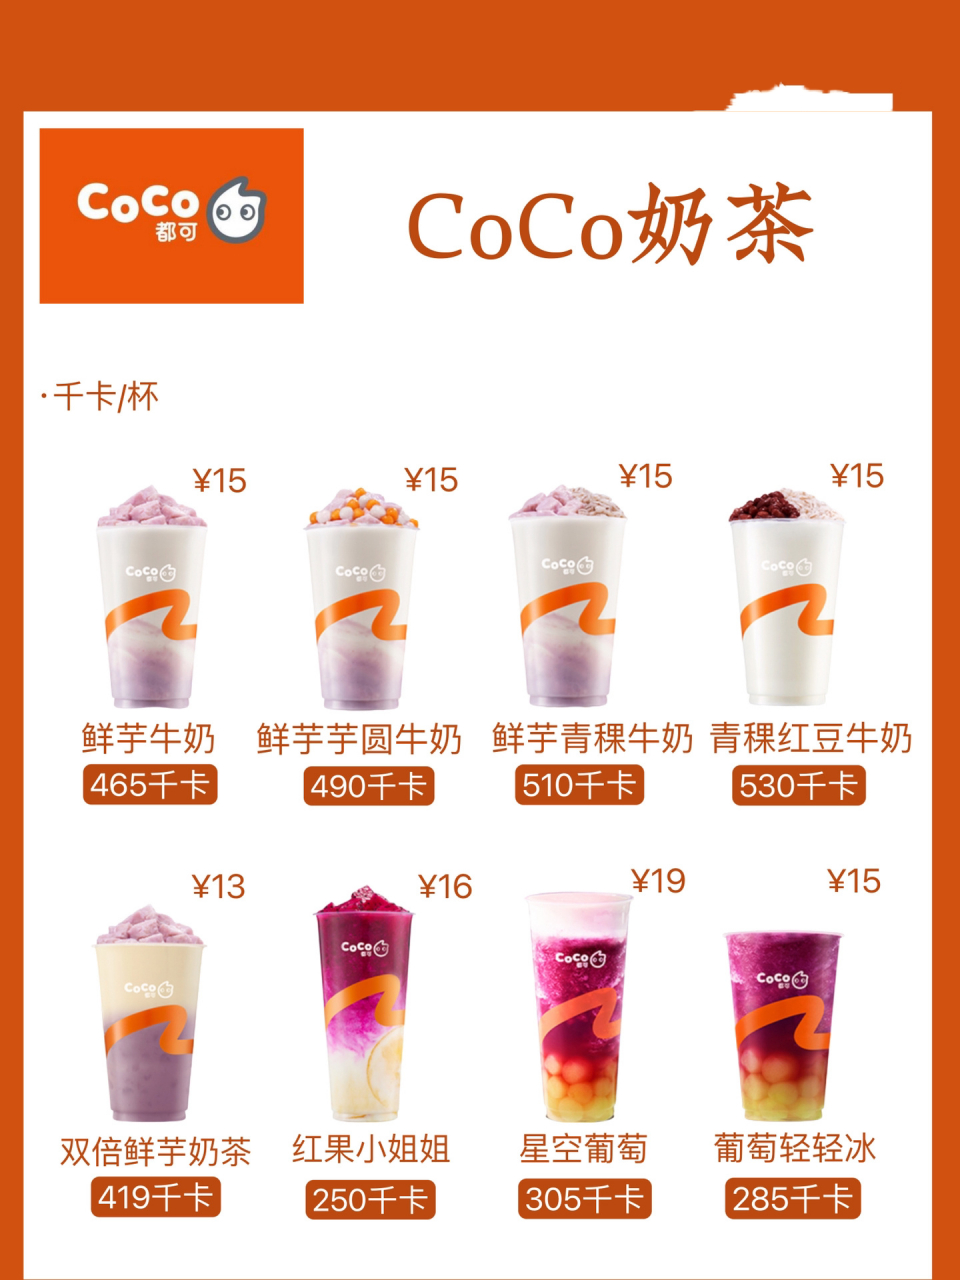 【coco奶茶】热量测评 这期测评的是coco奶茶,热量如图